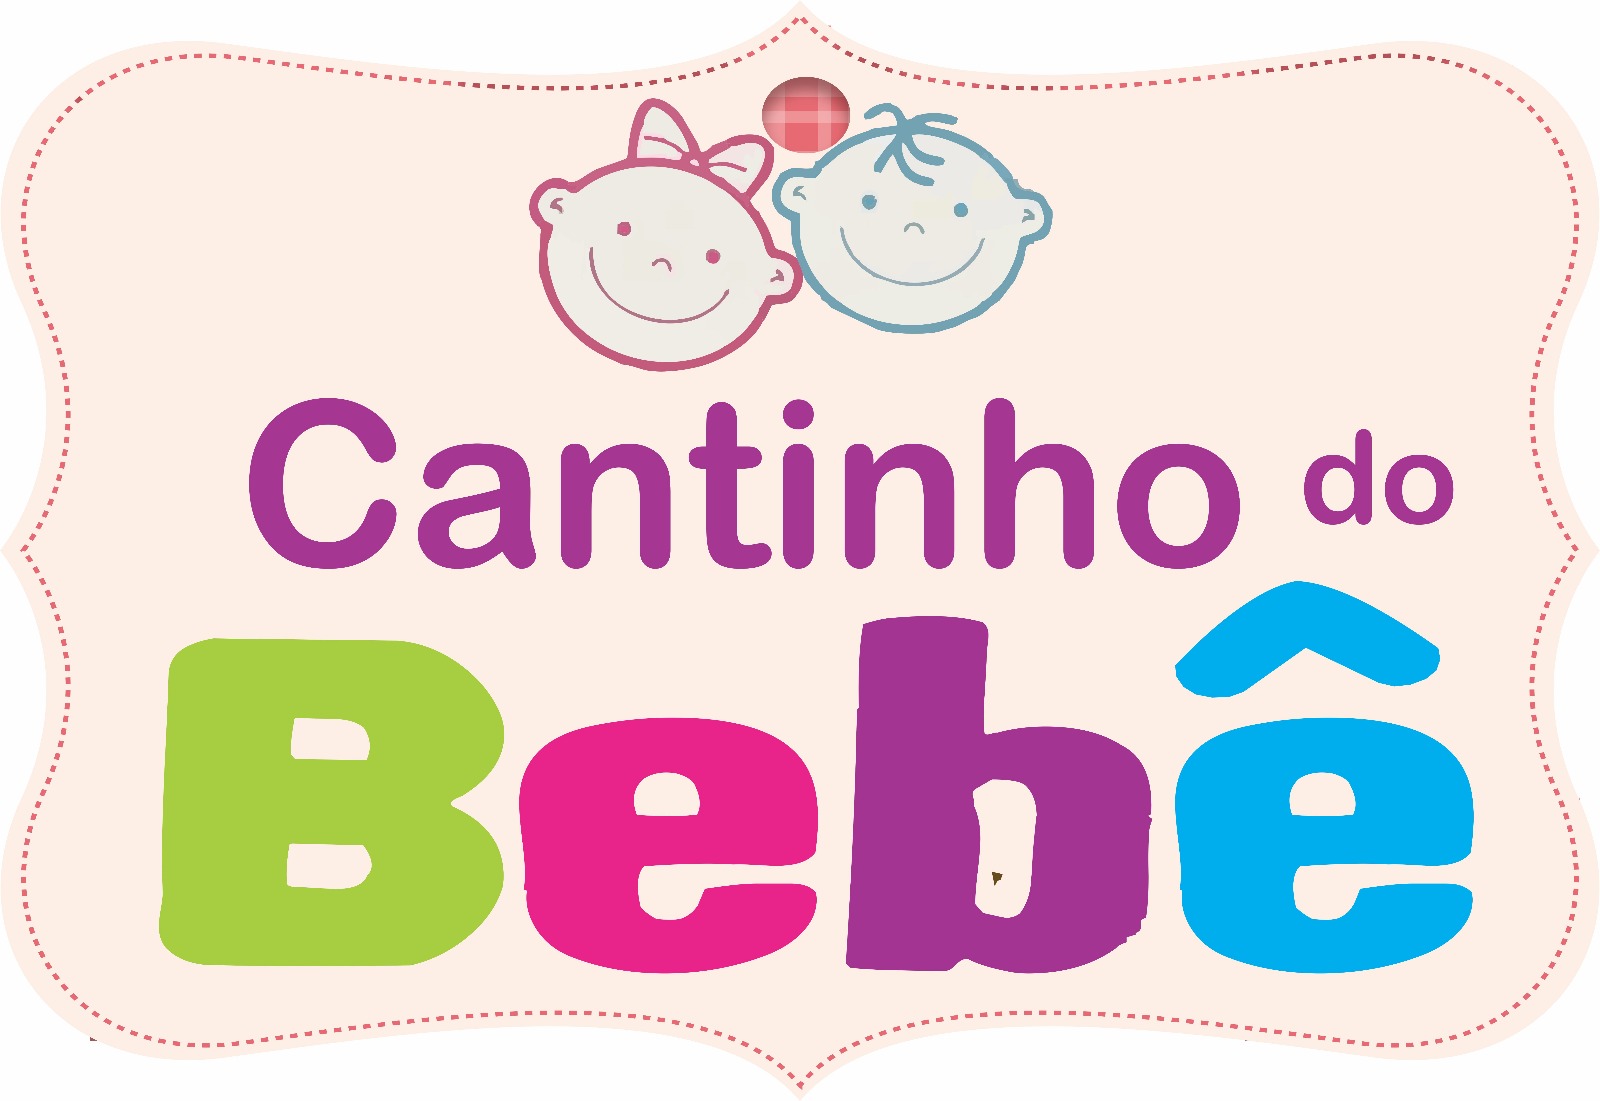 CANTINHO DO BEBÊ - Rio Branco, AC